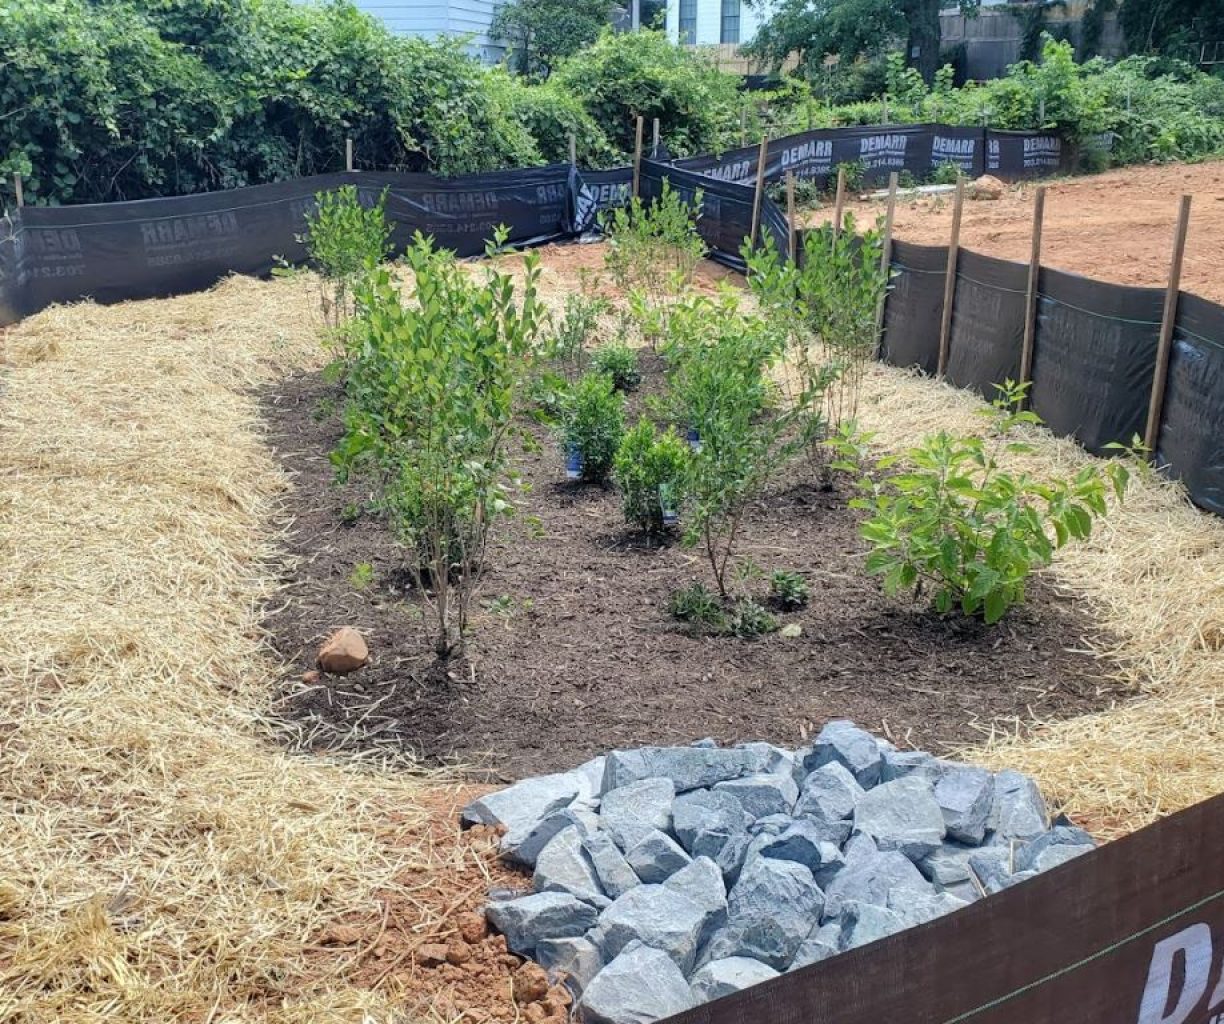 Bioretention-Detention Rain Garden for Stormwater Management